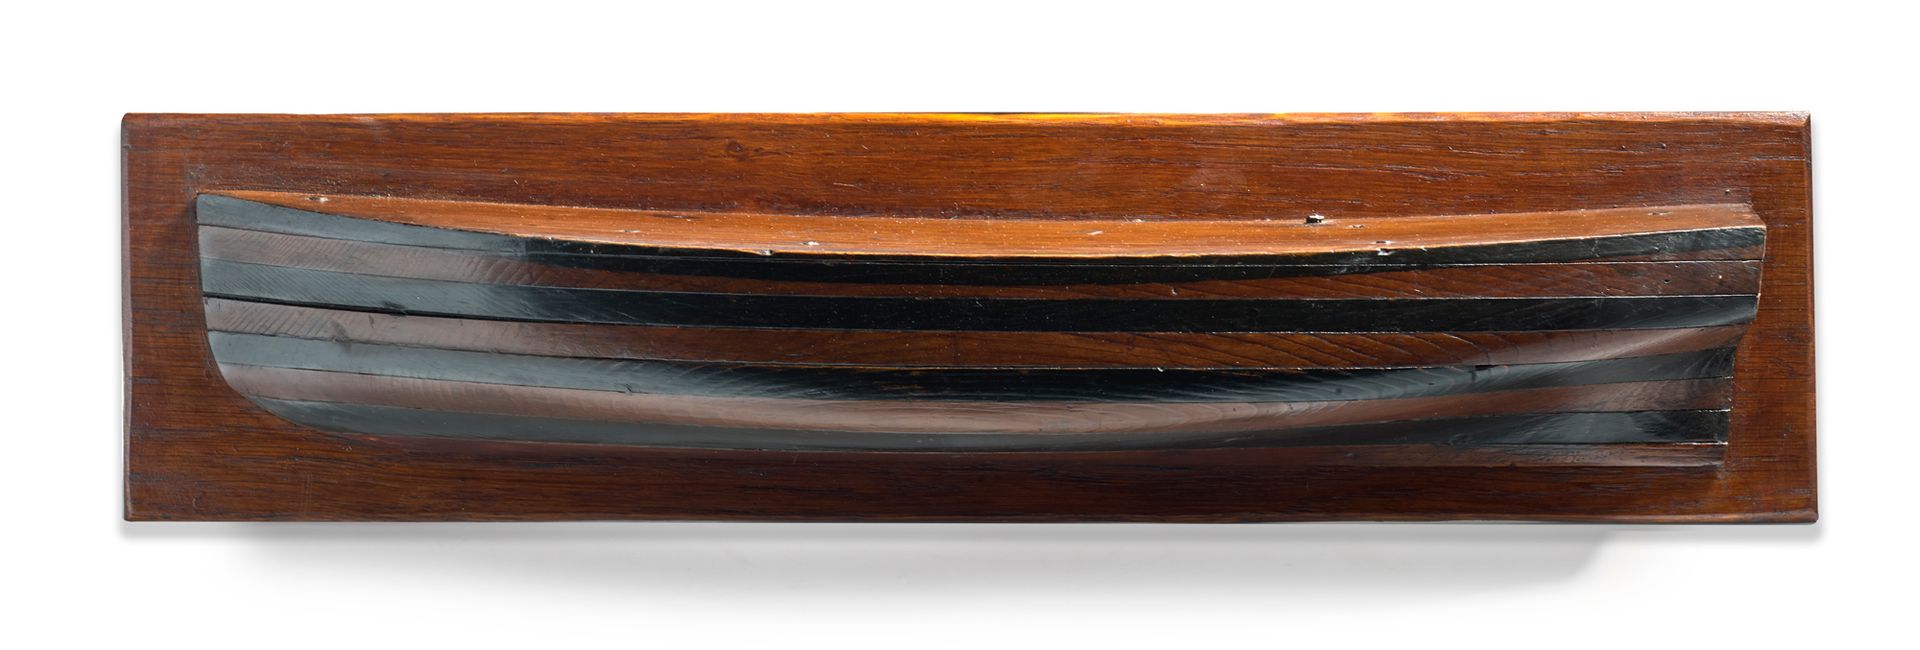 Null 切割机的半身，用钉子的边缘制作
法国，19世纪 高14厘米 长59厘米